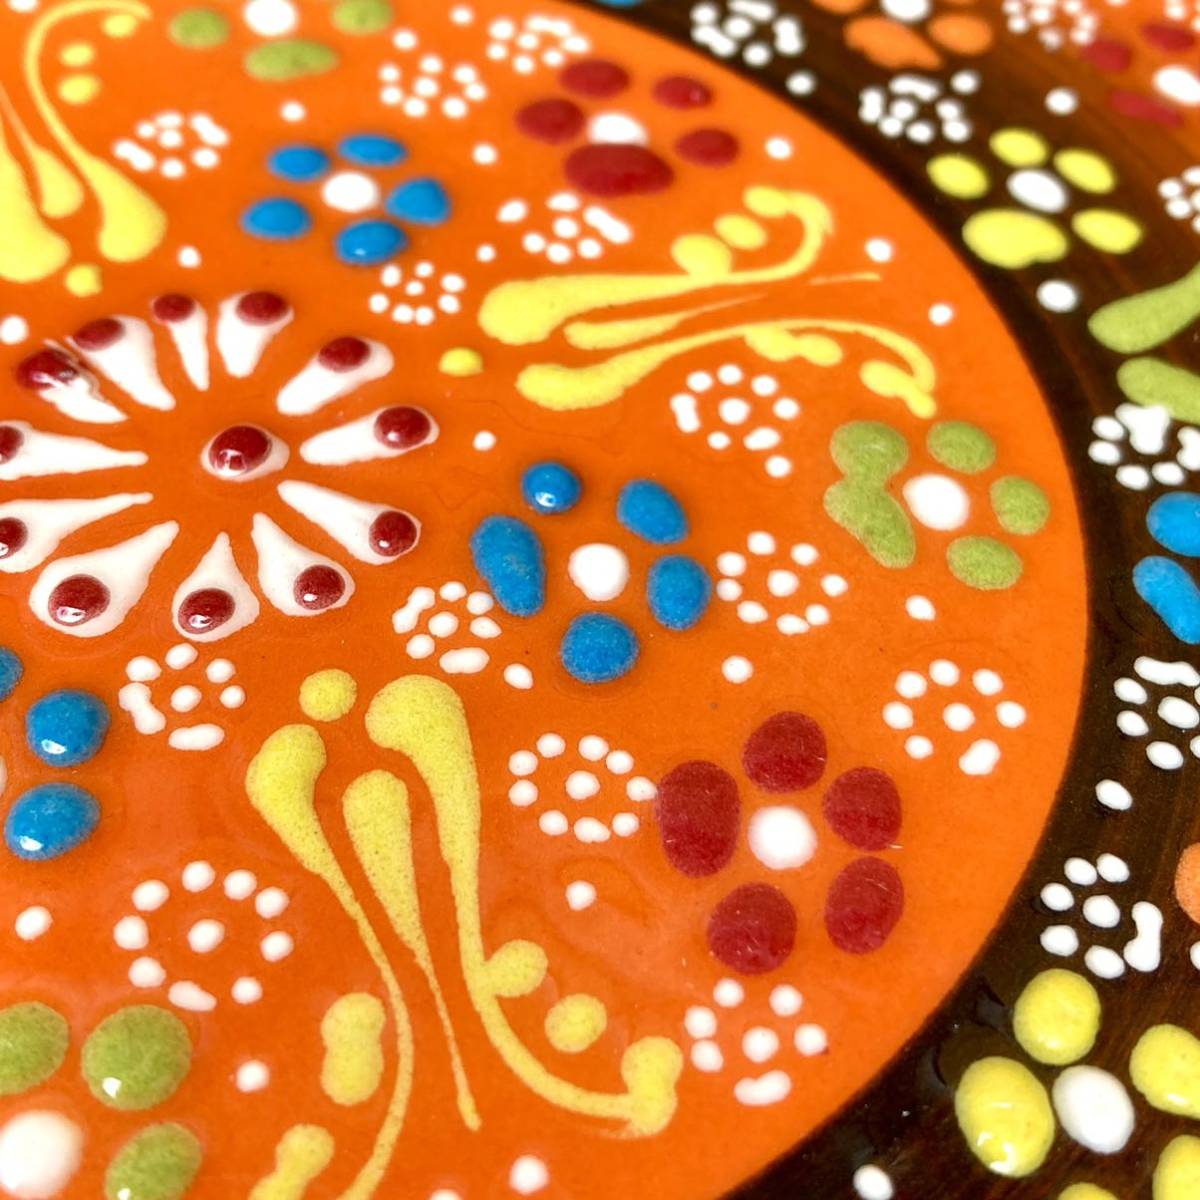 18cm* новый товар * Турция керамика коврик для посуды орнамент плитка * orange * ручная работа kyu жесткий ya керамика 169